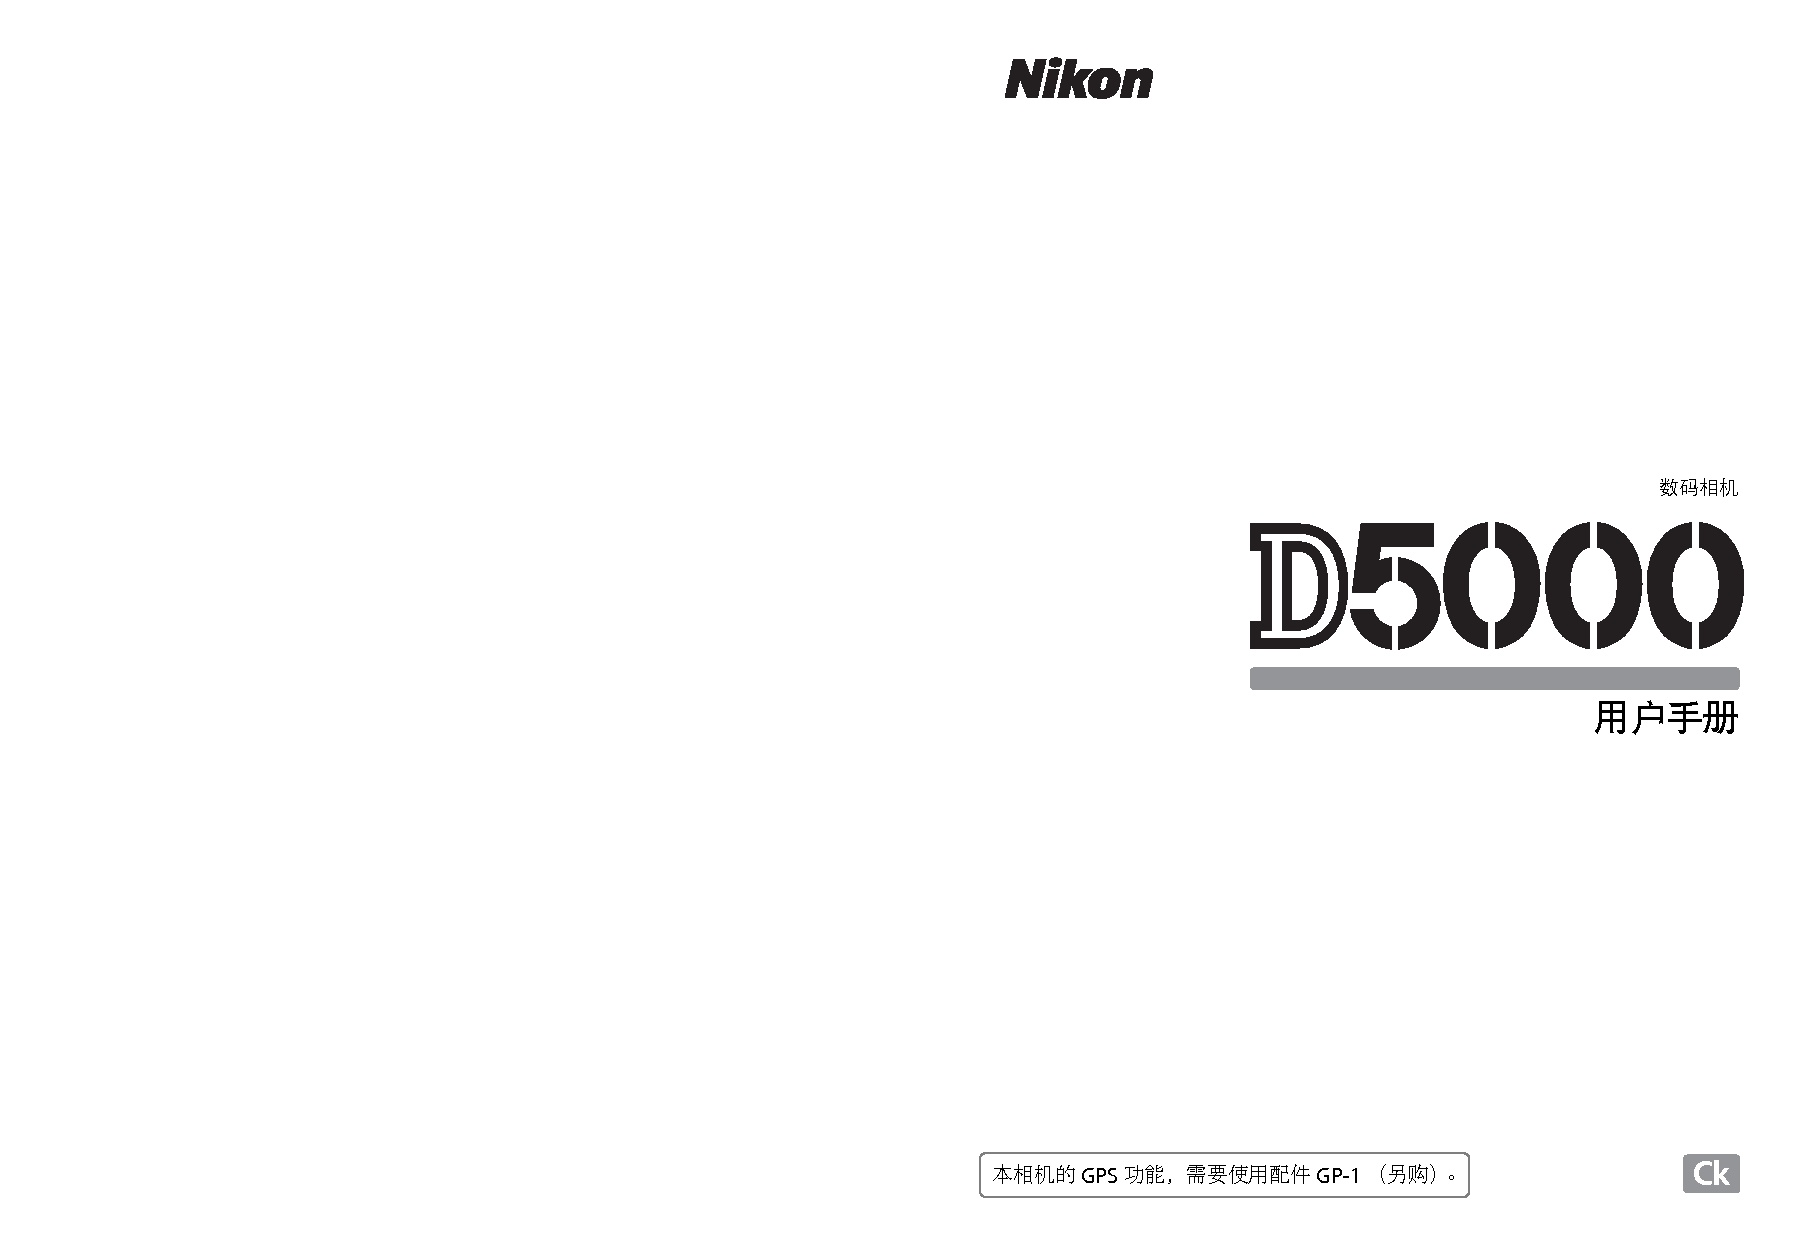 尼康 Nikon D5000 大陆版 使用说明书 封面